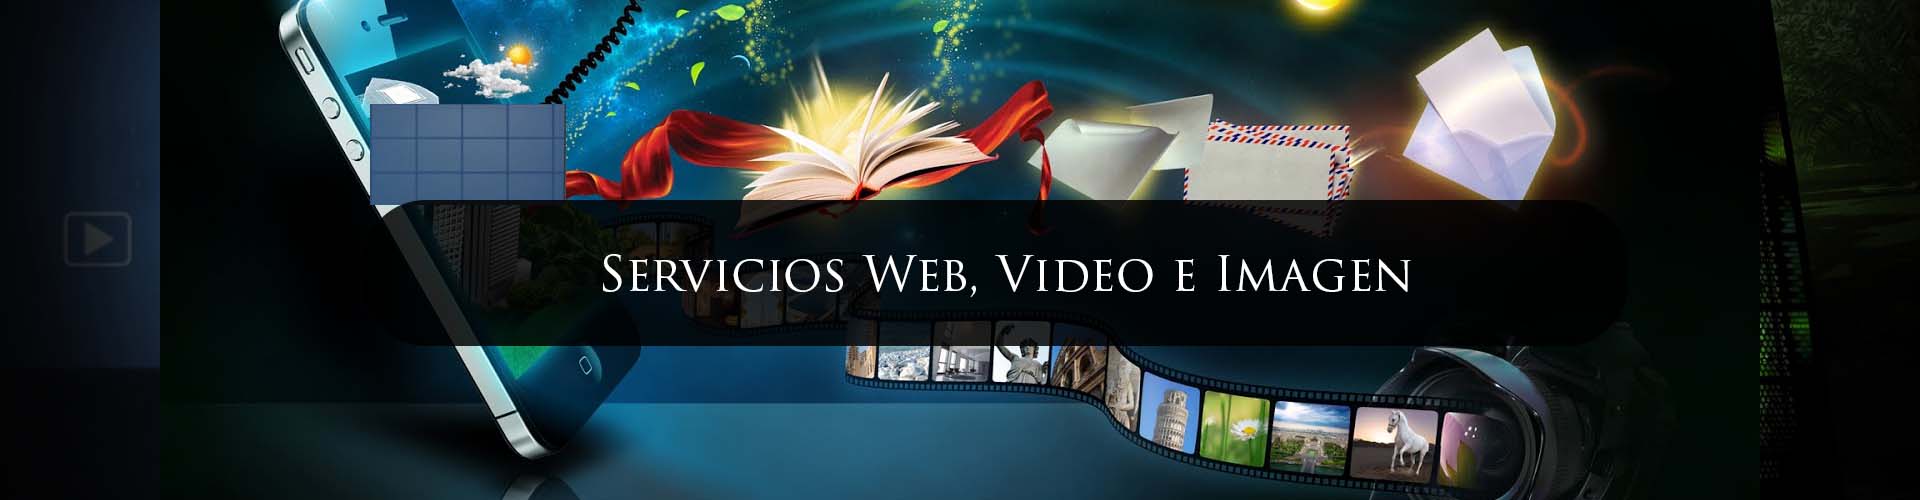 Servicios Web, Video e Imagen